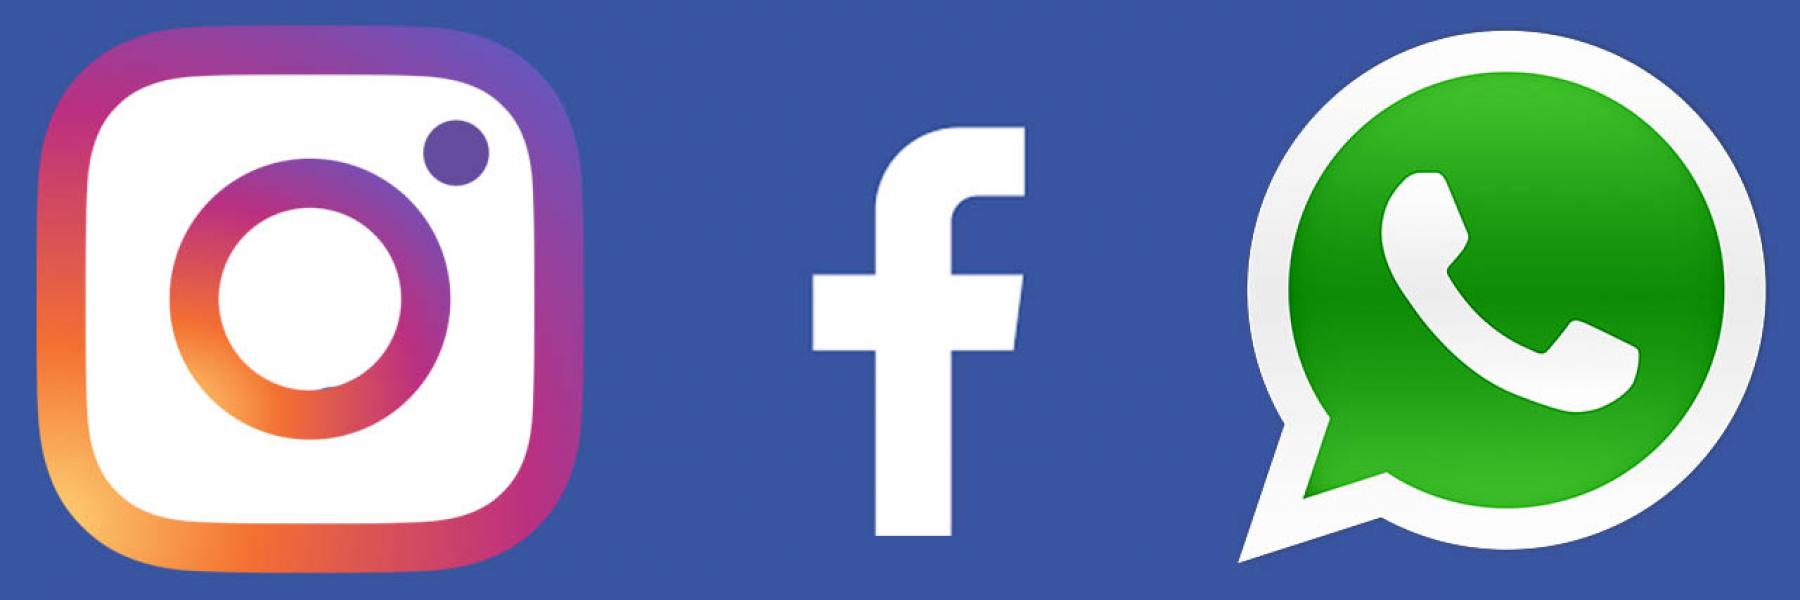 فيسبوك تدمج المحادثات على إنستغرام وماسنجر في التحديث الجديد